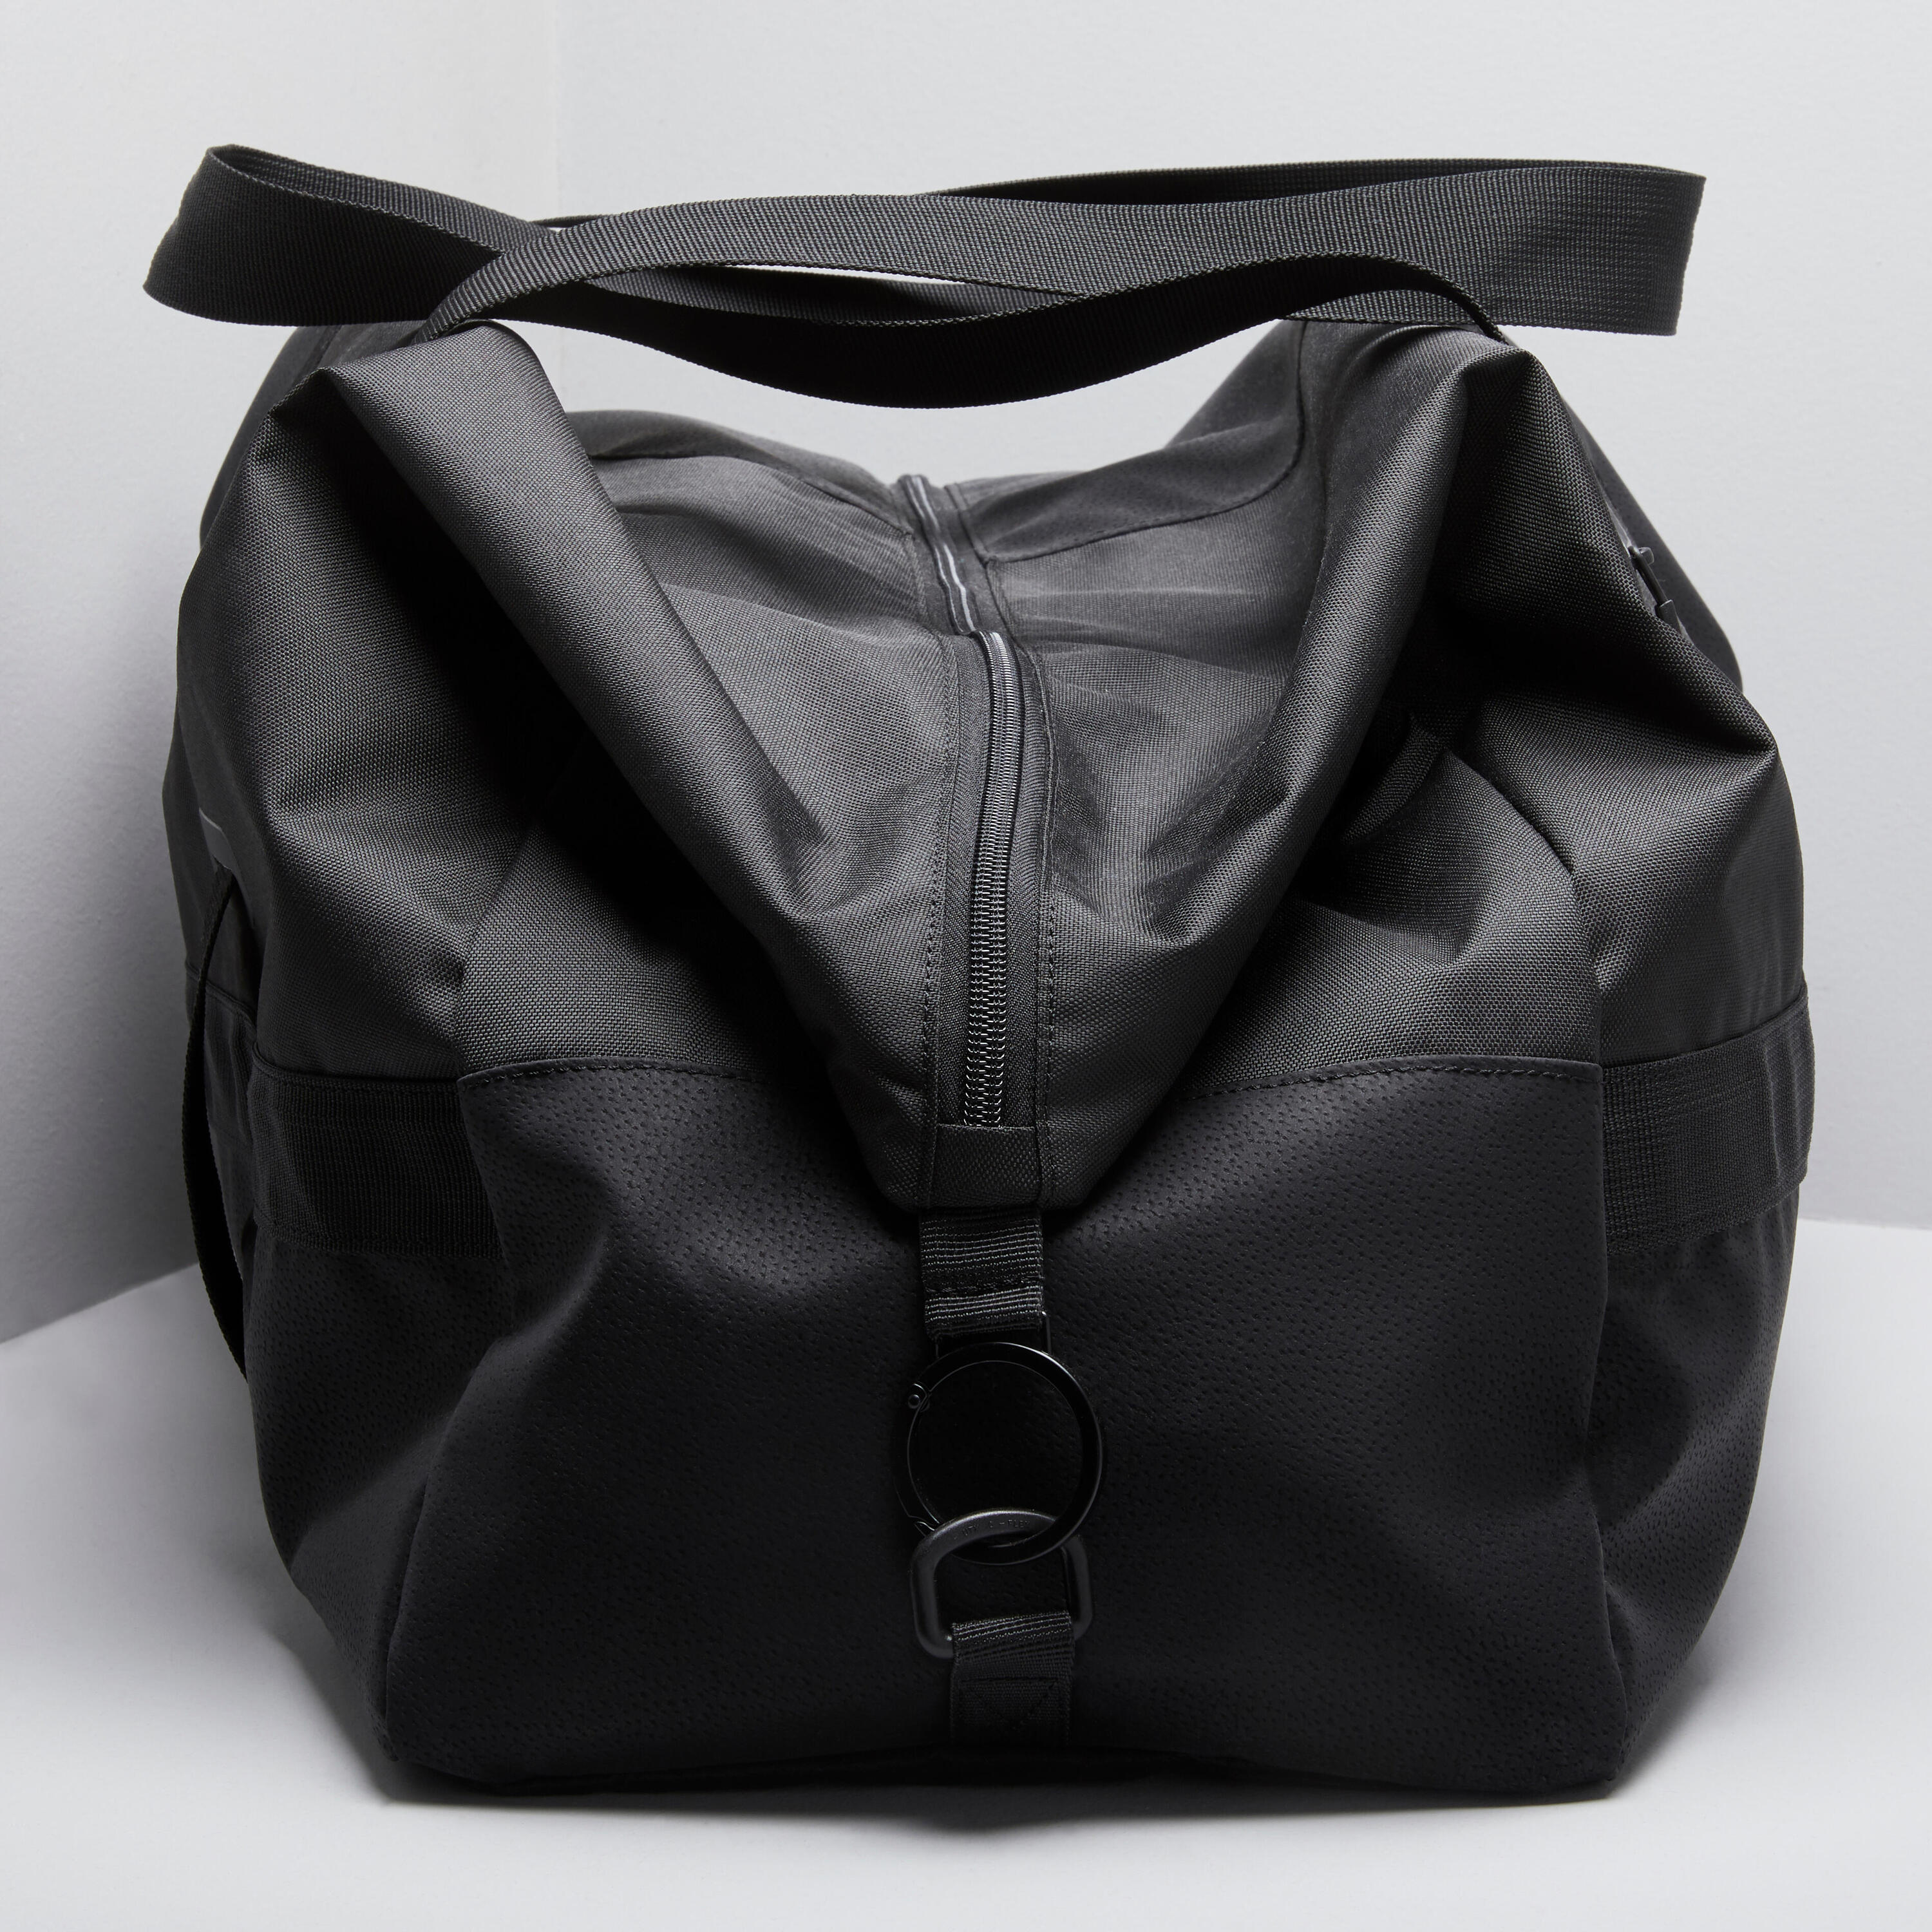 An Elegant Training Bag Designed For Both Men And Women 2/9